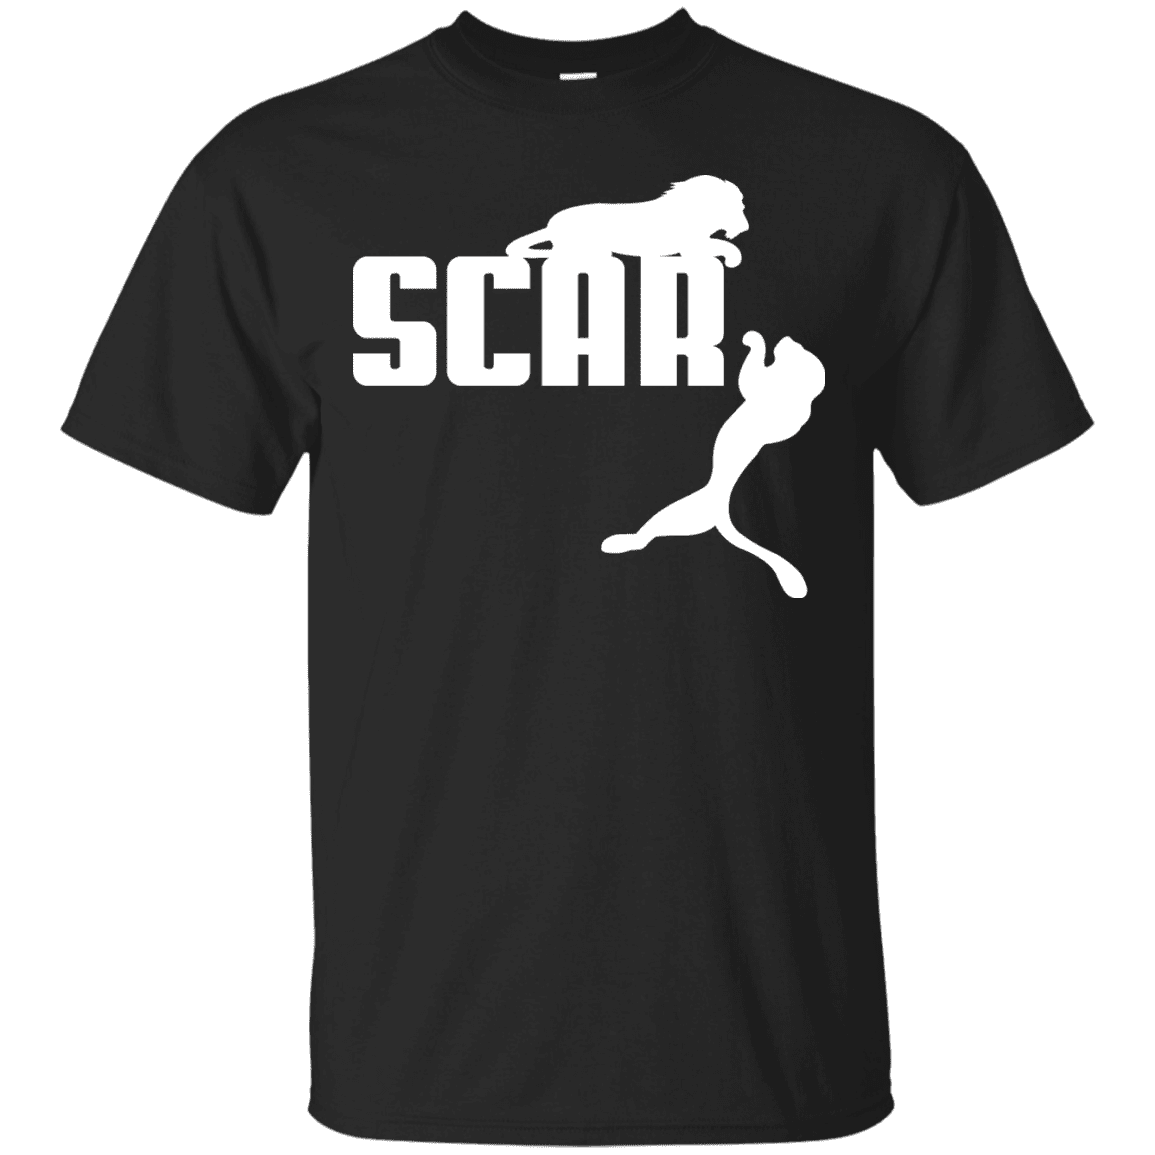 T-Shirts Black / S Scar! T-Shirt